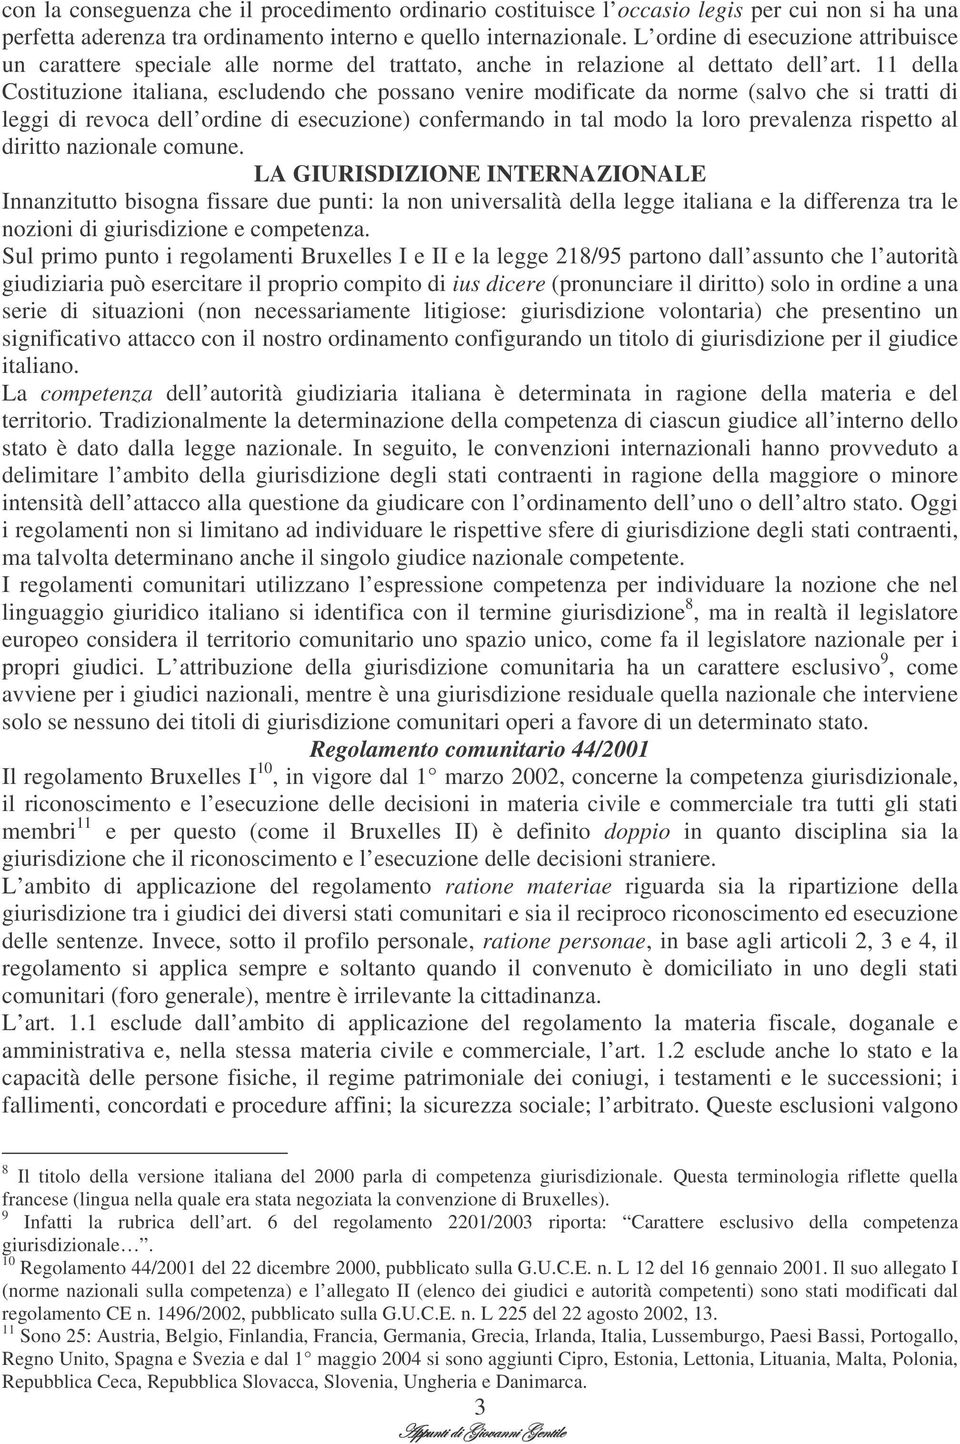 11 della Costituzione italiana, escludendo che possano venire modificate da norme (salvo che si tratti di leggi di revoca dell ordine di esecuzione) confermando in tal modo la loro prevalenza